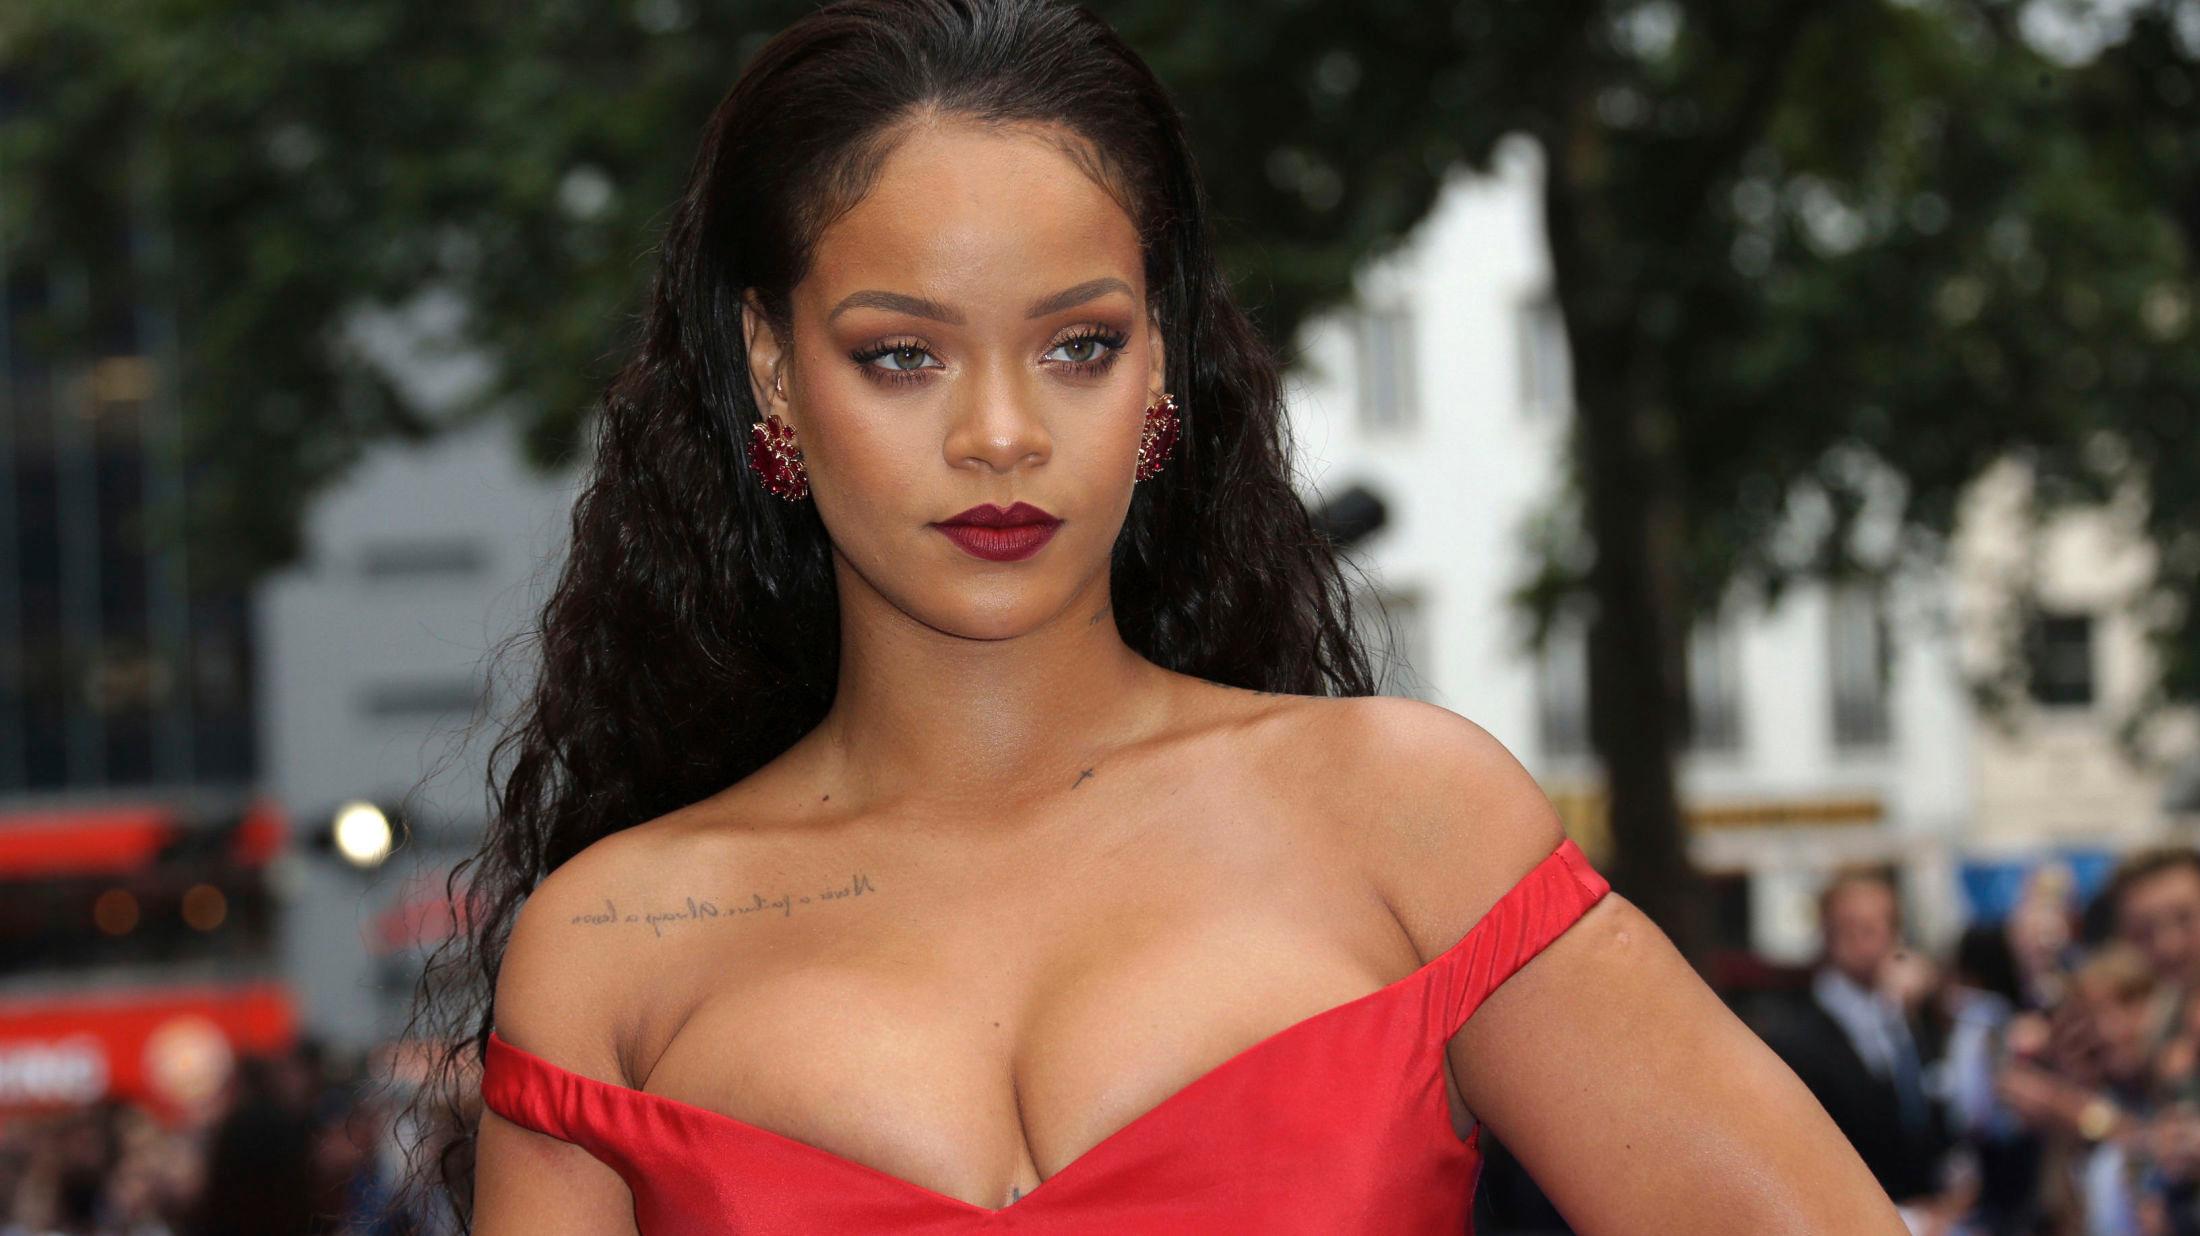 LOVER FLERE STØRRELSER: Rihannas undertøykolleksjon ble hyllet for sitt fokus på mangfold, nå lover de enda flere størrelser. Foto: Joel Ryan/AP